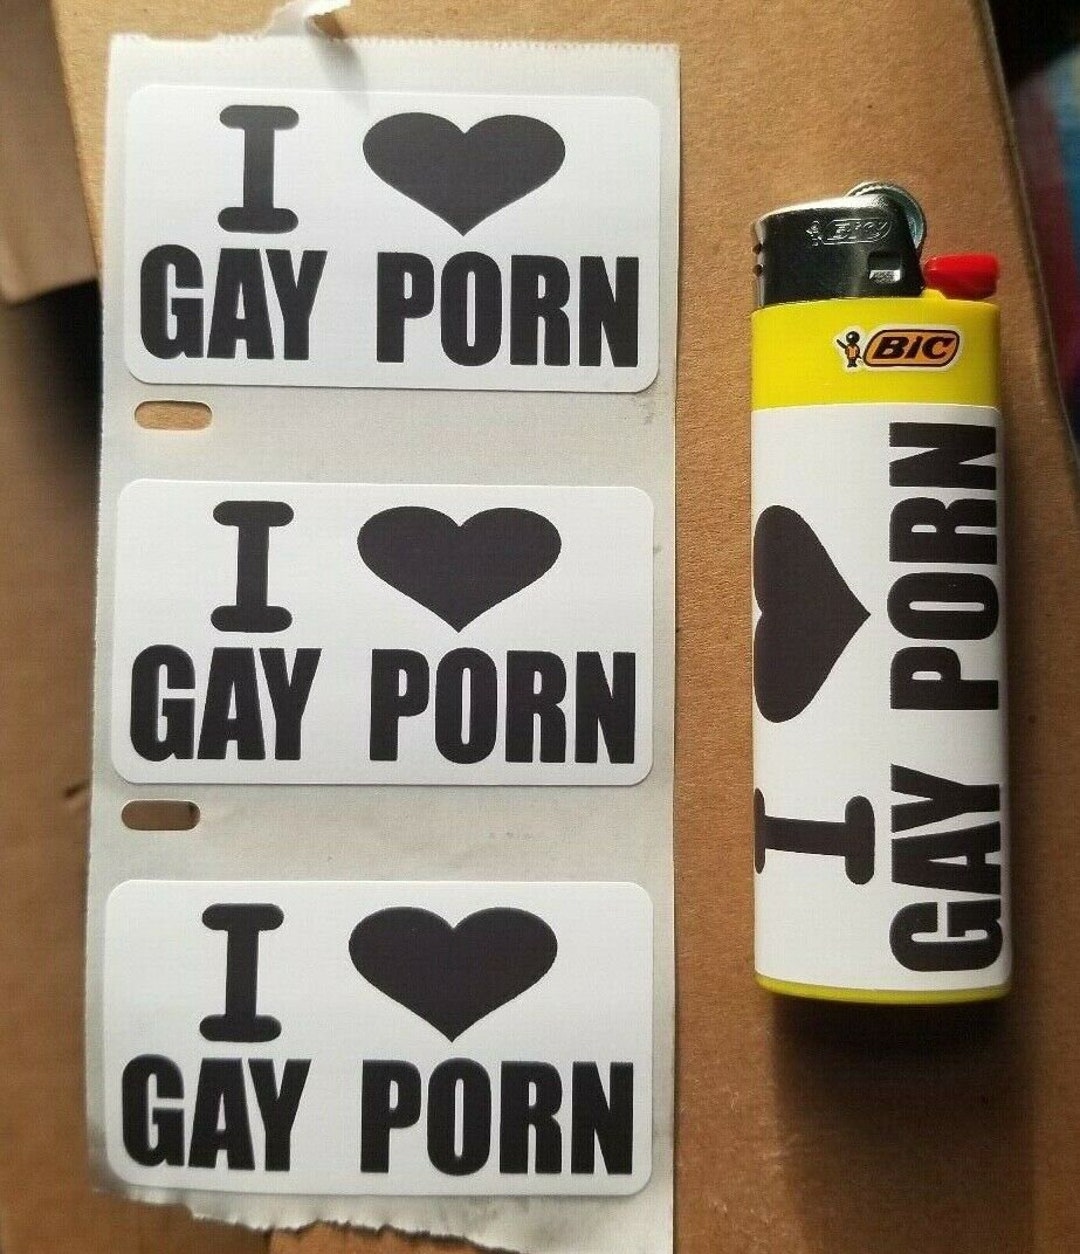 Sticker porn gay